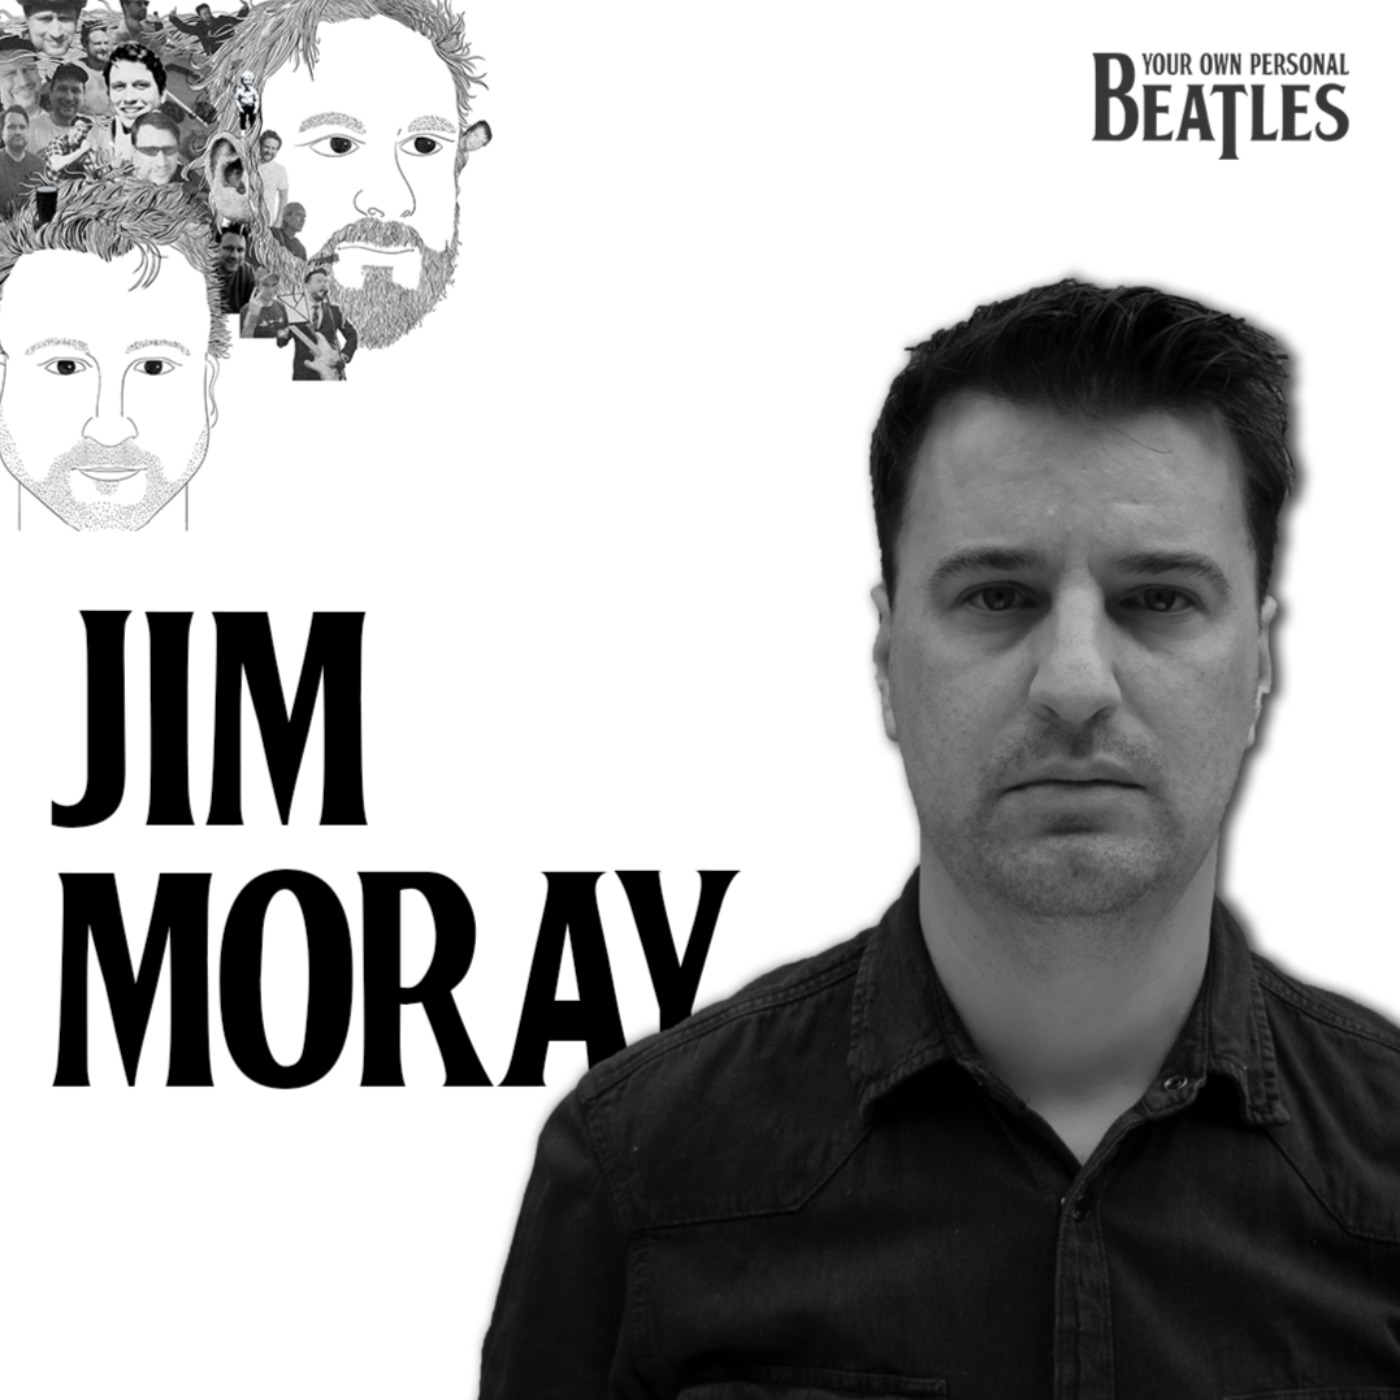 Jim Moray's Personal Beatles